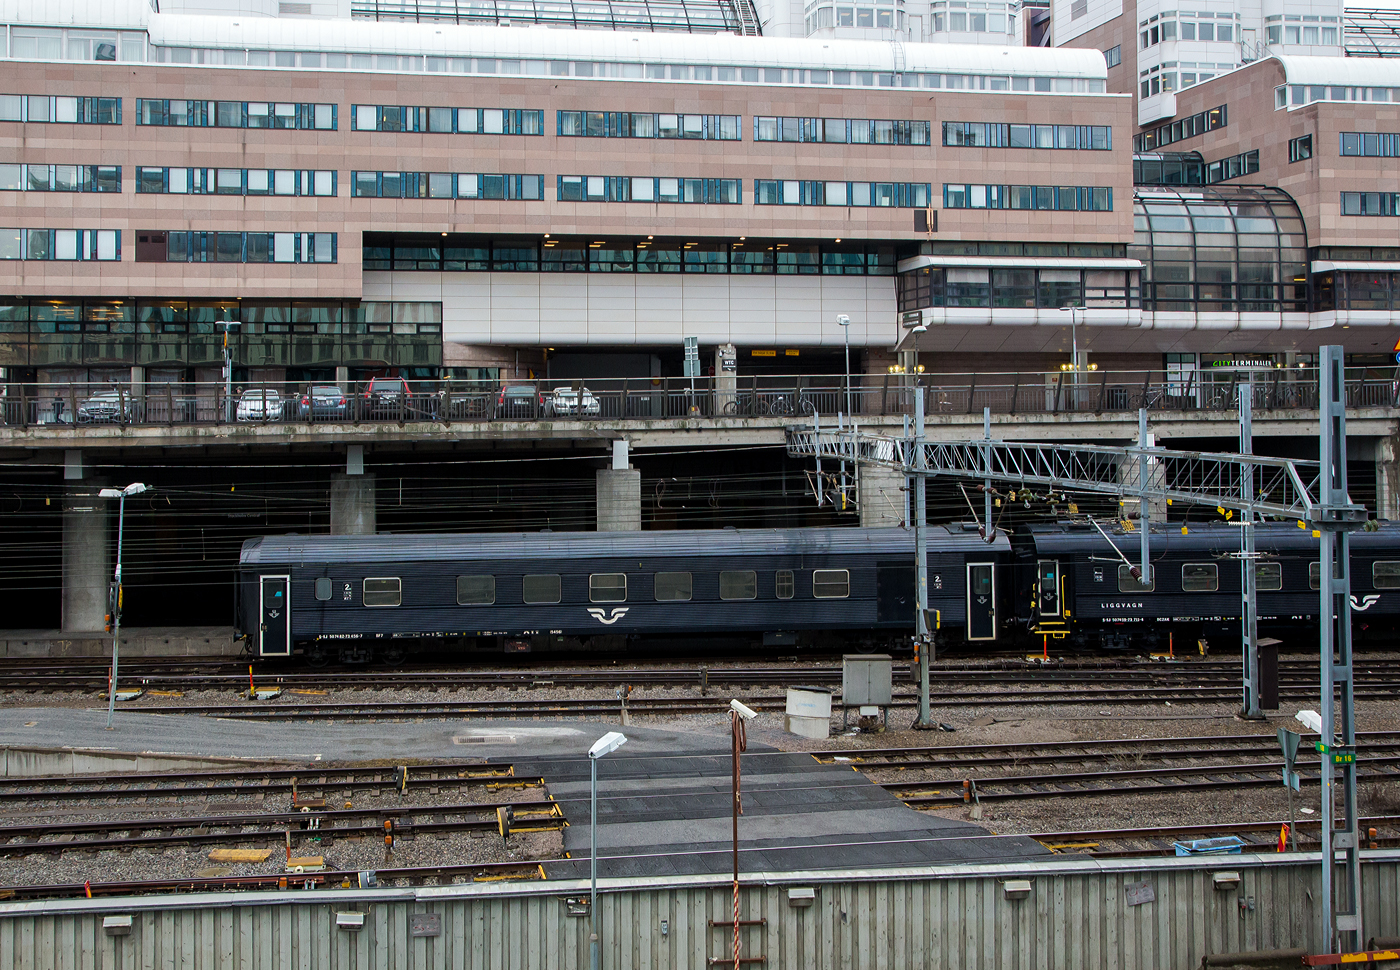 Der SJ zweite Klasse Reisezugwagen mit Gepäckabteil BF7 - 5456, S-SJ 50 74 82-73 456-7, der SJ (Statens Järnvägar AB, ehemaligen schwedische Staatsbahnen), ex SJ  BF4 – 5456, am 21 März 2019 am Zugende von einem Personenzug bei der Einfahrt in den Bahnhof Stockholm Central (Stockholm Hbf).

Die SJ beschloss 2008, einige ihrer Reisezugwagen aus den 1980er Jahren umzubauen und zu modernisieren. So wurden 28 der zwischen 1985-1986 von Kalmar Verkstads AB gebauten BF4-Wagen, wurden zwischen 2010 und 2011 zu BF7 umgebaut.  

TECHNISCHE DATEN:
Umgebaute Anzahl: 28
Nummerierungen SJ : 5401-5404, 5412-5425, 5456-5465
Hersteller: Kalmar Verkstads AB
Baujahre: 1985 und 1986 (Umbau 2010 und 2011)
Spurweite: 1.435 mm (Normalspur)
Länge über Puffer: 26.400 mm
Wagenkastenlänge: 25.900 mm
Wagenkastenbreite: 3.080 mm
Höhe über Schienenoberkante: 4.400 mm
Drehzapfenabstand: 18.500 mm
Achsstand im Drehgestell: 2.500 mm
Laufraddurchmesser: 980 mm (neu)
Leergewicht: 47 t
Höchstgeschwindigkeit: 160 km/h
Sitzplätze in der 2. Klasse: 46 (40 im Großraum und ein 6er Abteil)
Toiletten: 1 (geschlossenes System)
Bremsbauart: KE-GPR

Quelle: järnväg.net